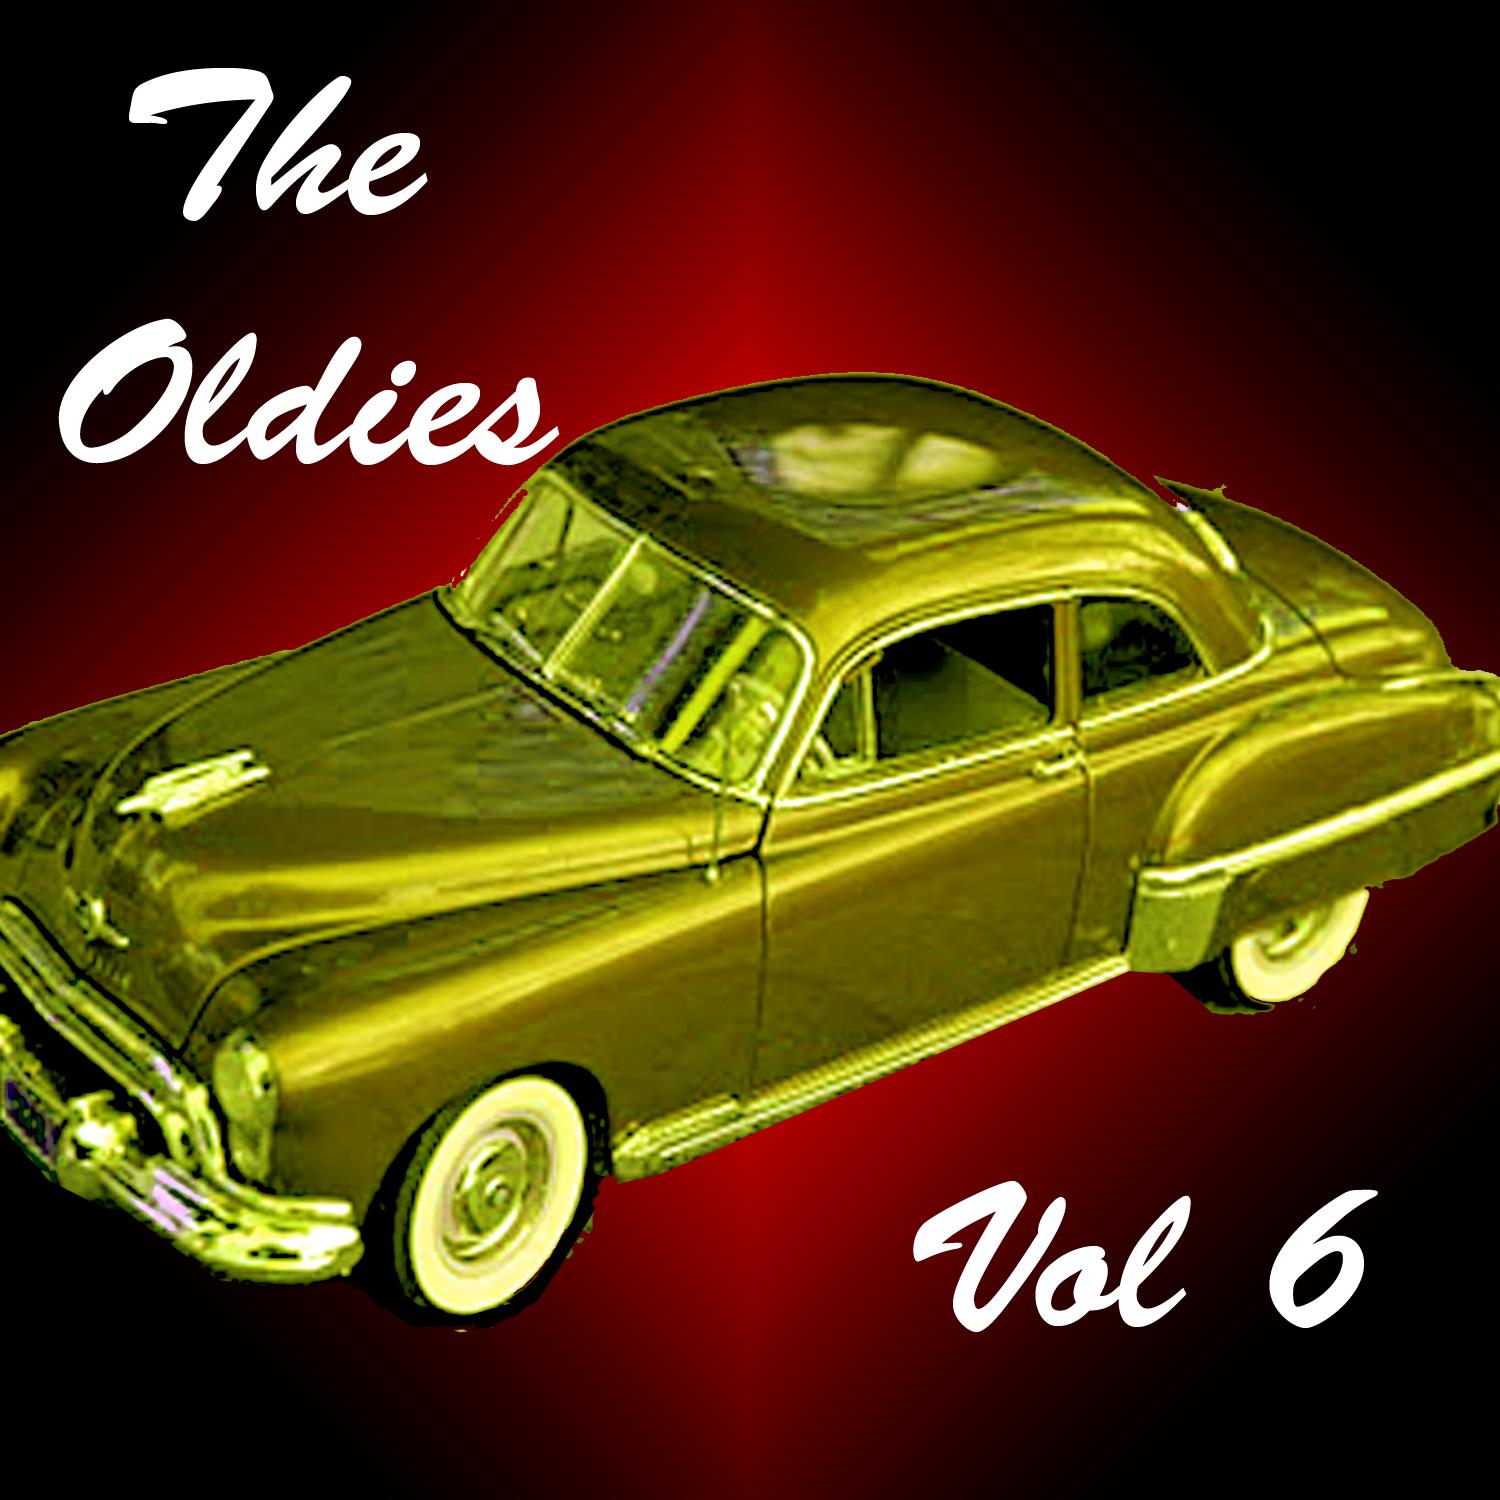 The Oldies, Vol. 6